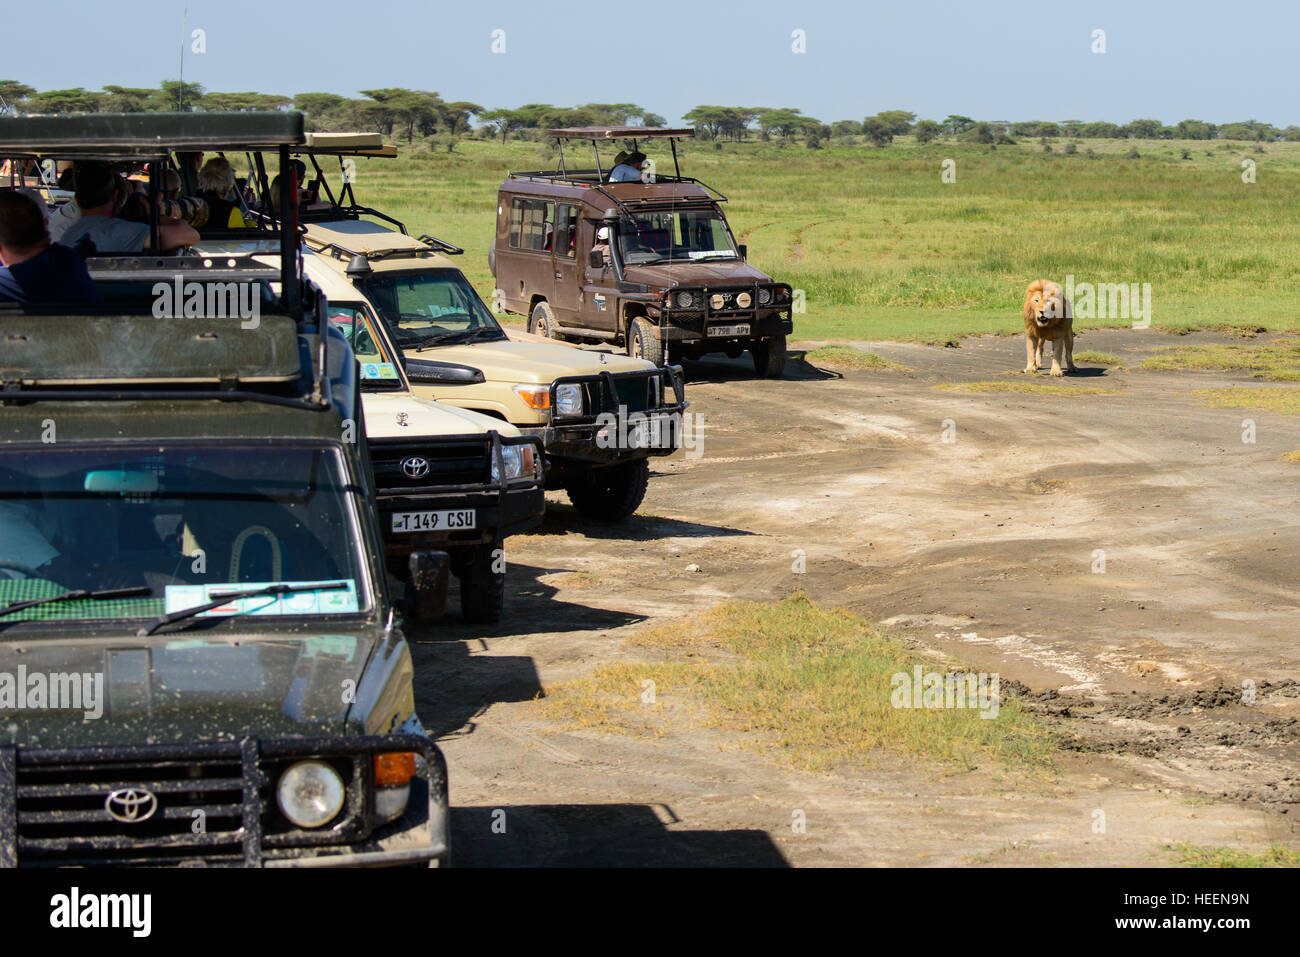 Una fila di turista 4WD vetture a quattro ruote motrici SUV veicoli SUV attendere per fotografare i lions vicino a Ndutu, Tanzania con un leone vicino. Foto Stock